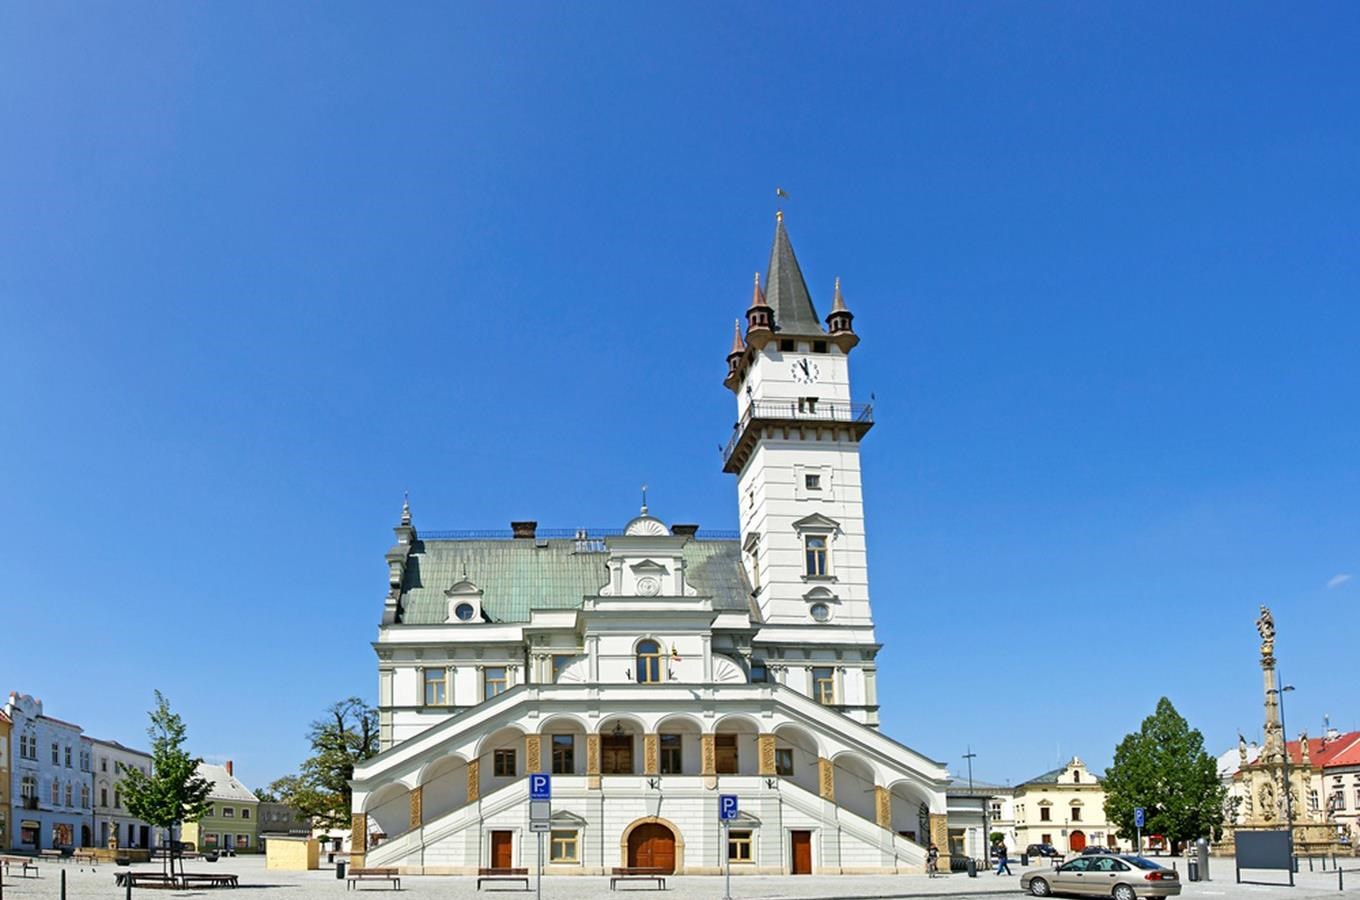 Městská radnice s vyhlídkovou věží v Uničově